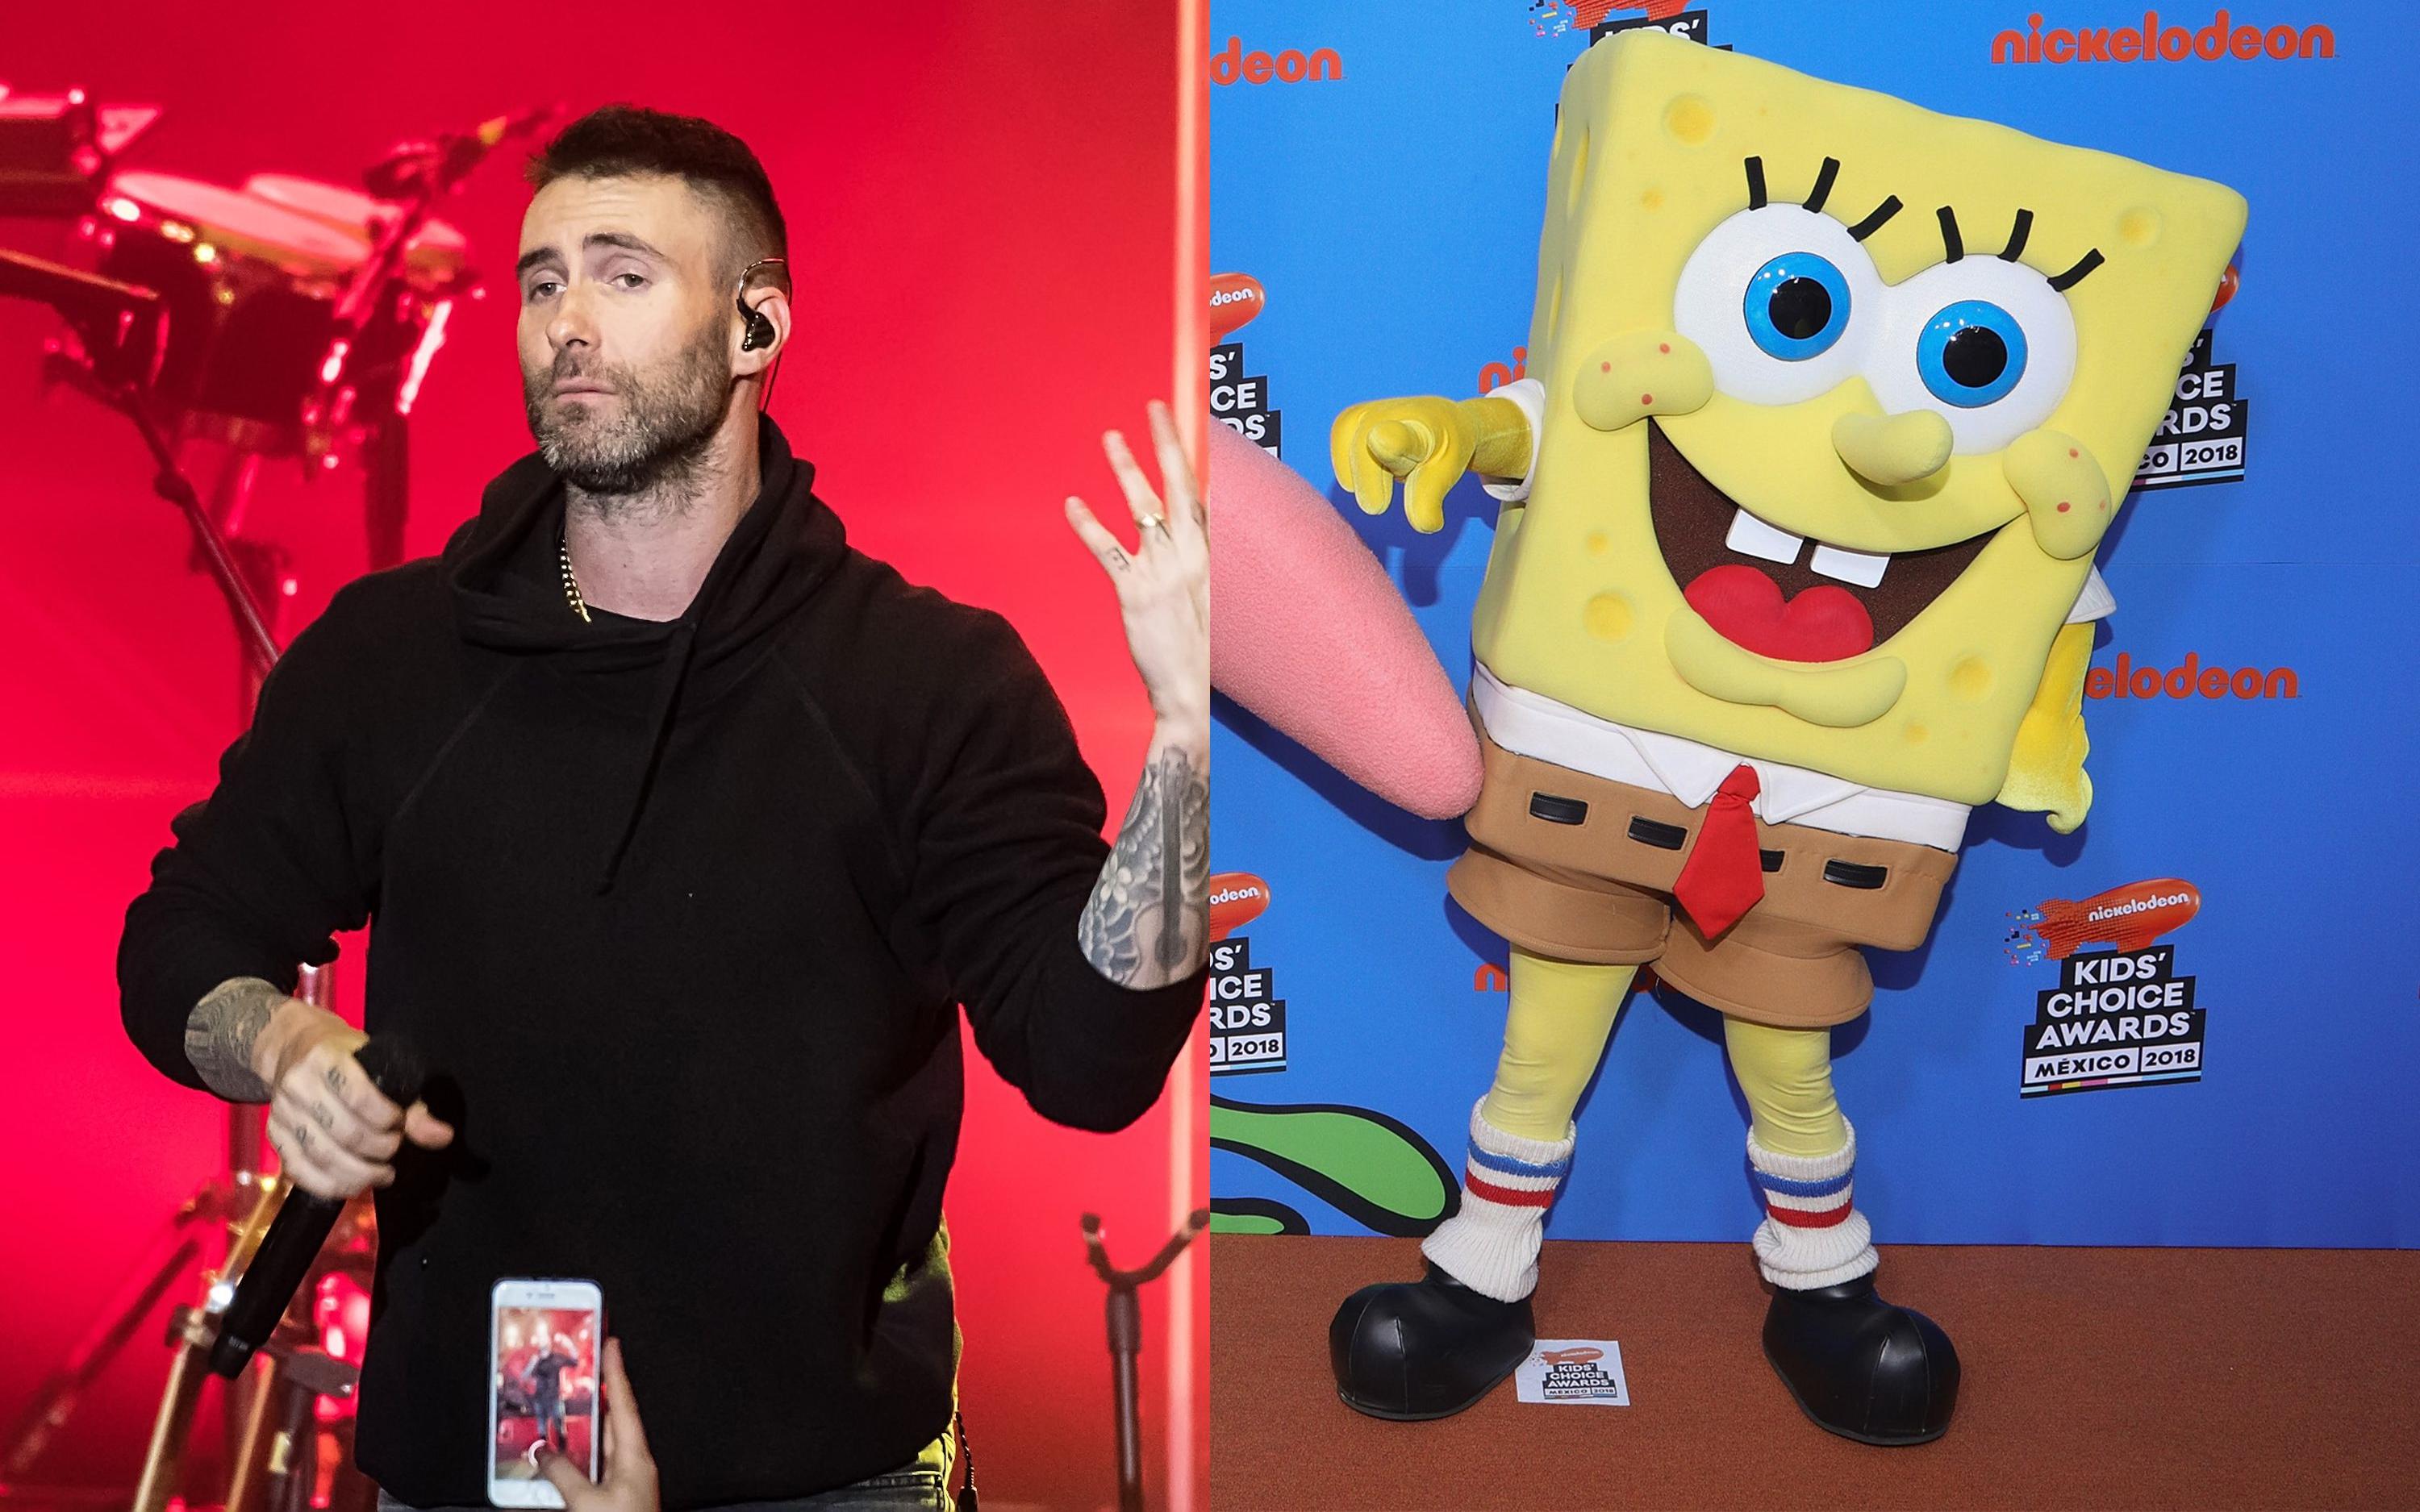 Fan hâm mộ gửi đơn kiến nghị Maroon 5 trình diễn nhạc phim hoạt hình SpongeBob tại show Super Bowl